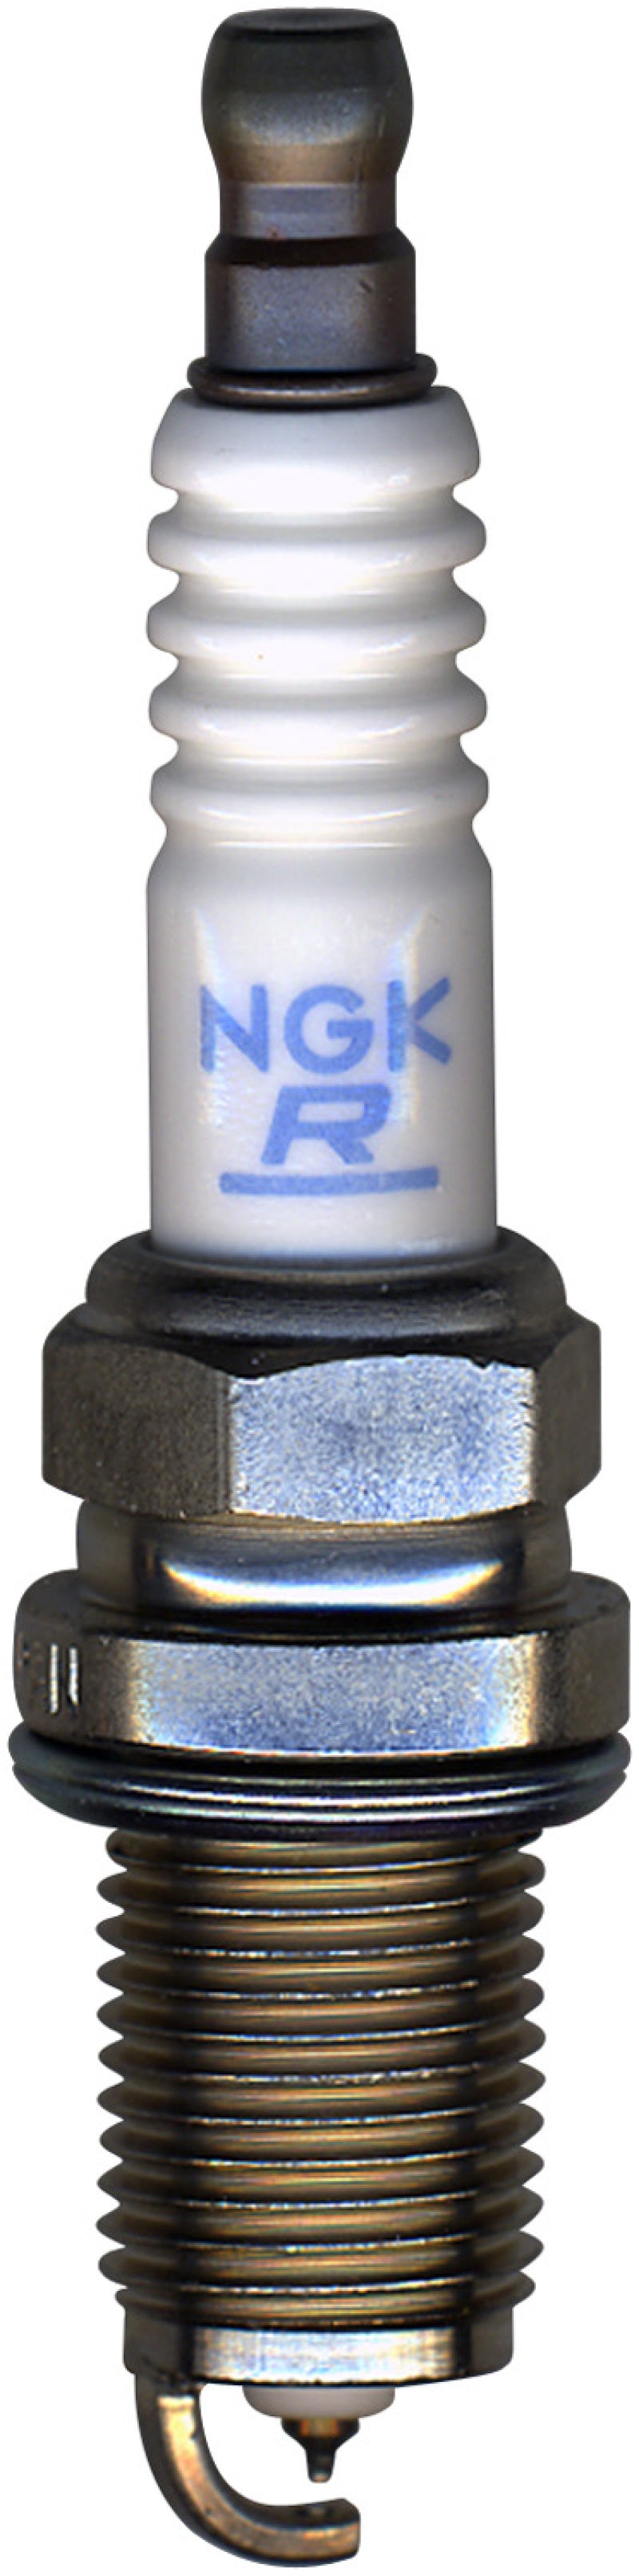 NGK Laser Platinum Spark Plug Box of 4 (PFR7N8DS)